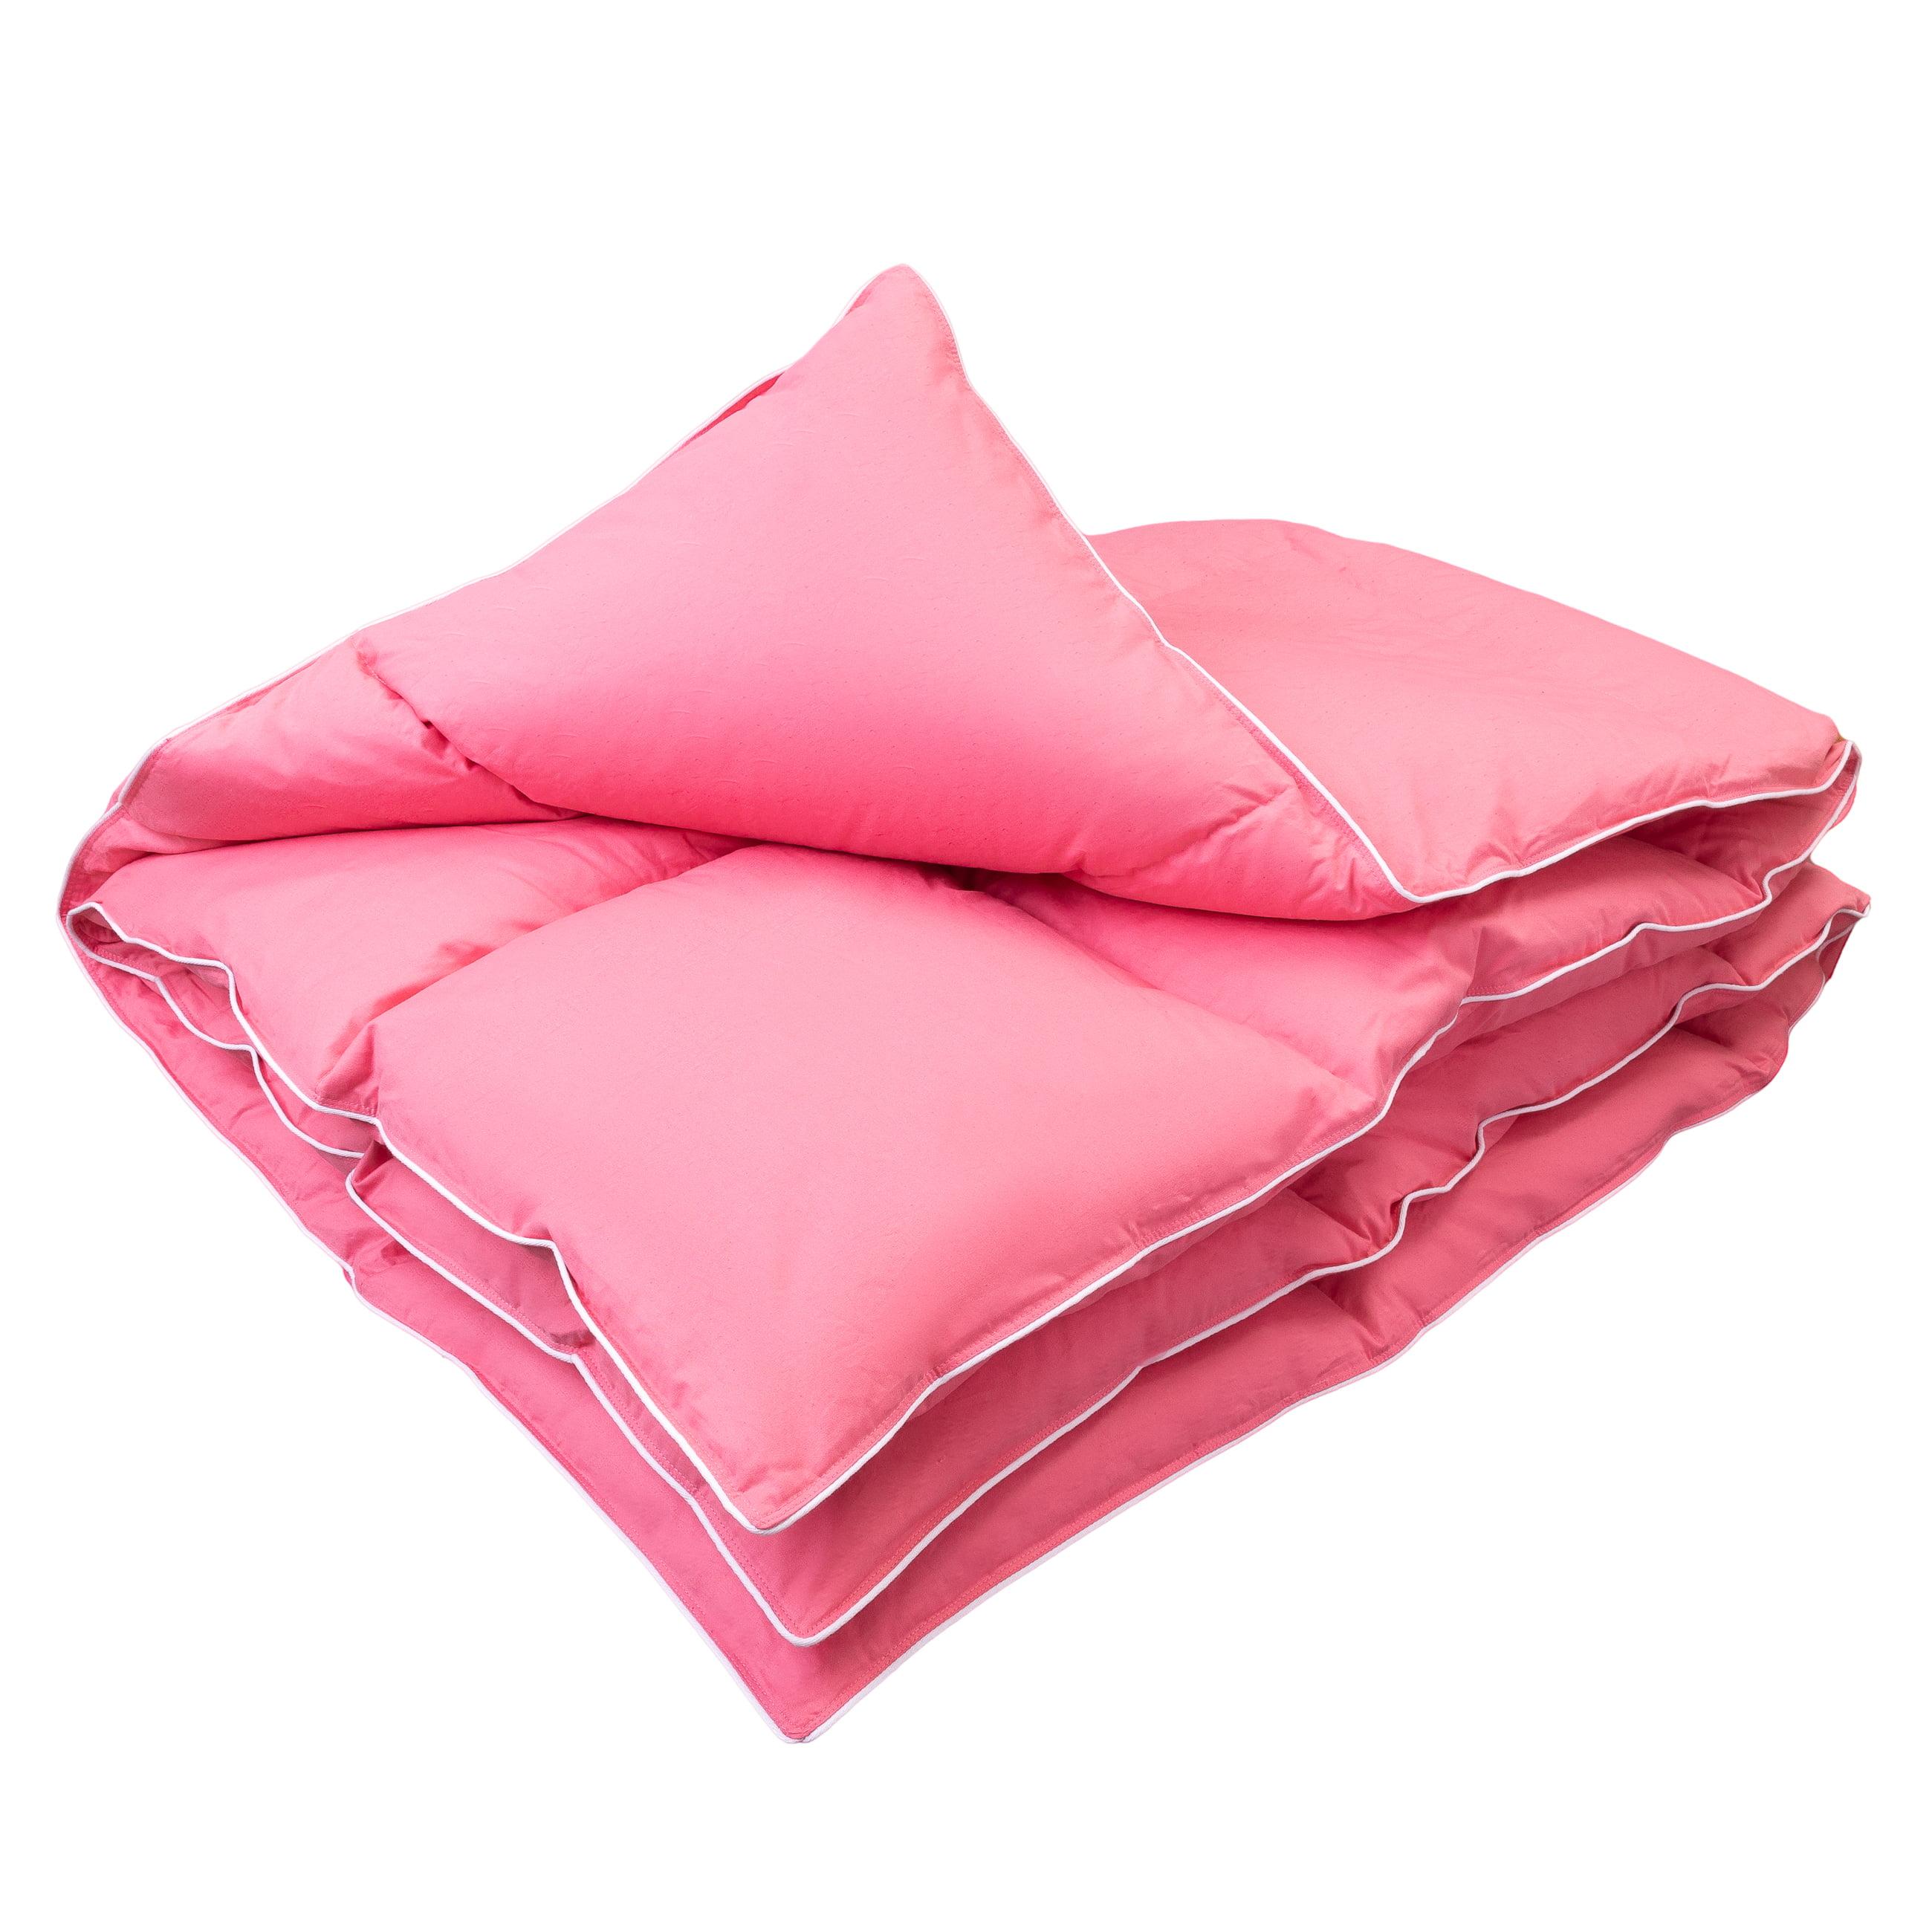 Zdjęcie packshot różowej kołdry puchowej